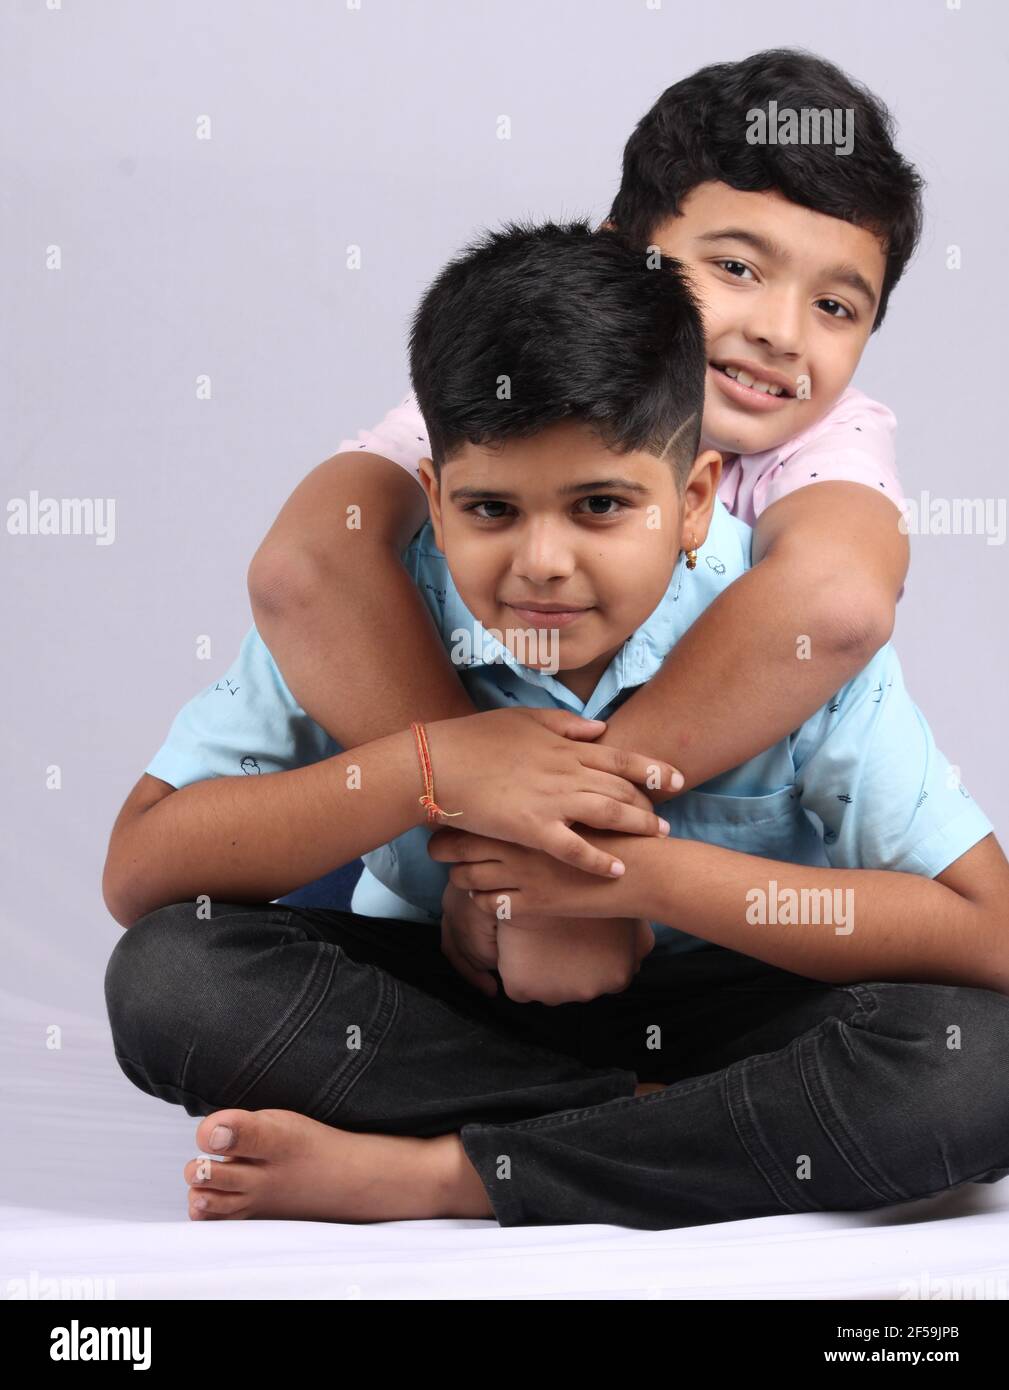 Fröhliche indische Geschwister umarmen und posieren für ein Foto. Stockfoto